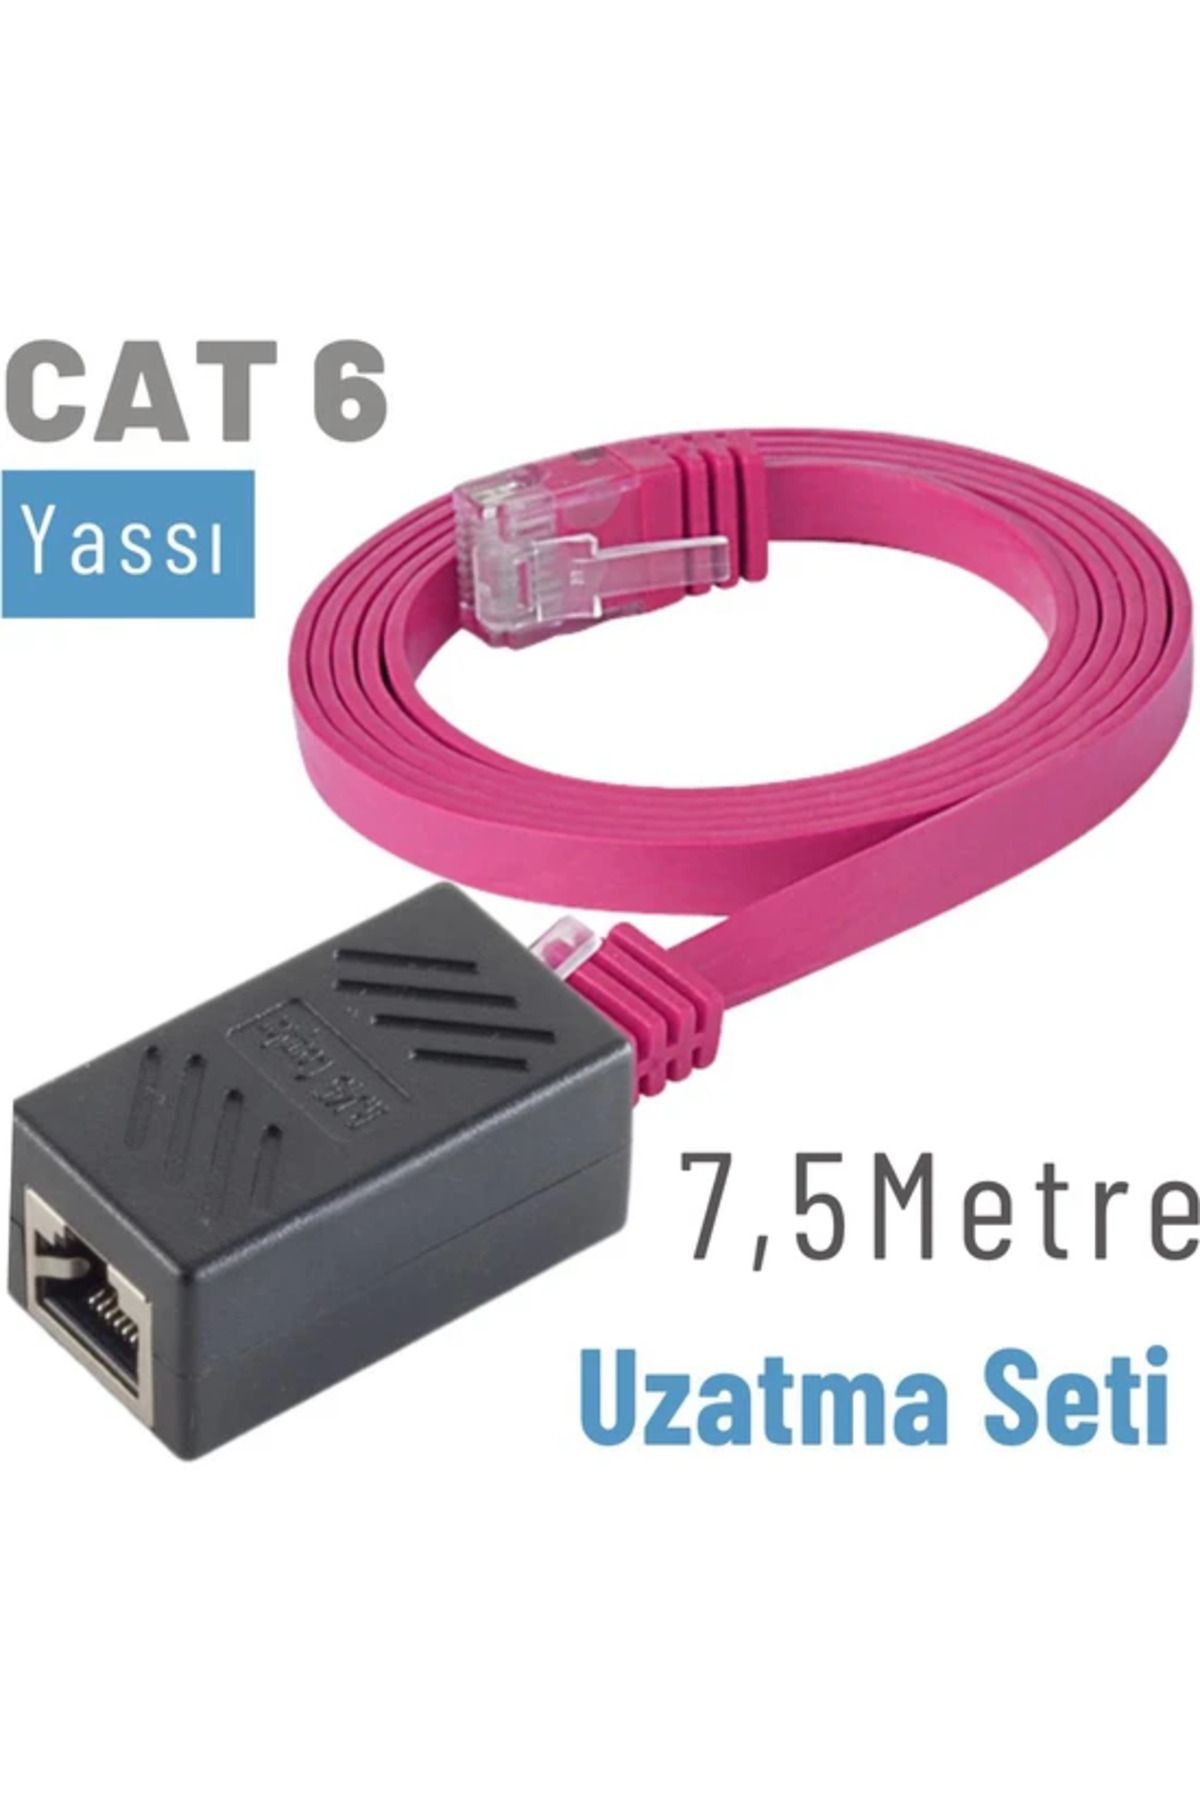 IRENIS Cat6 Kablo 7,5 Metre Uzatma Seti, Yassı Ethernet Kablo Ve Ekleyici,